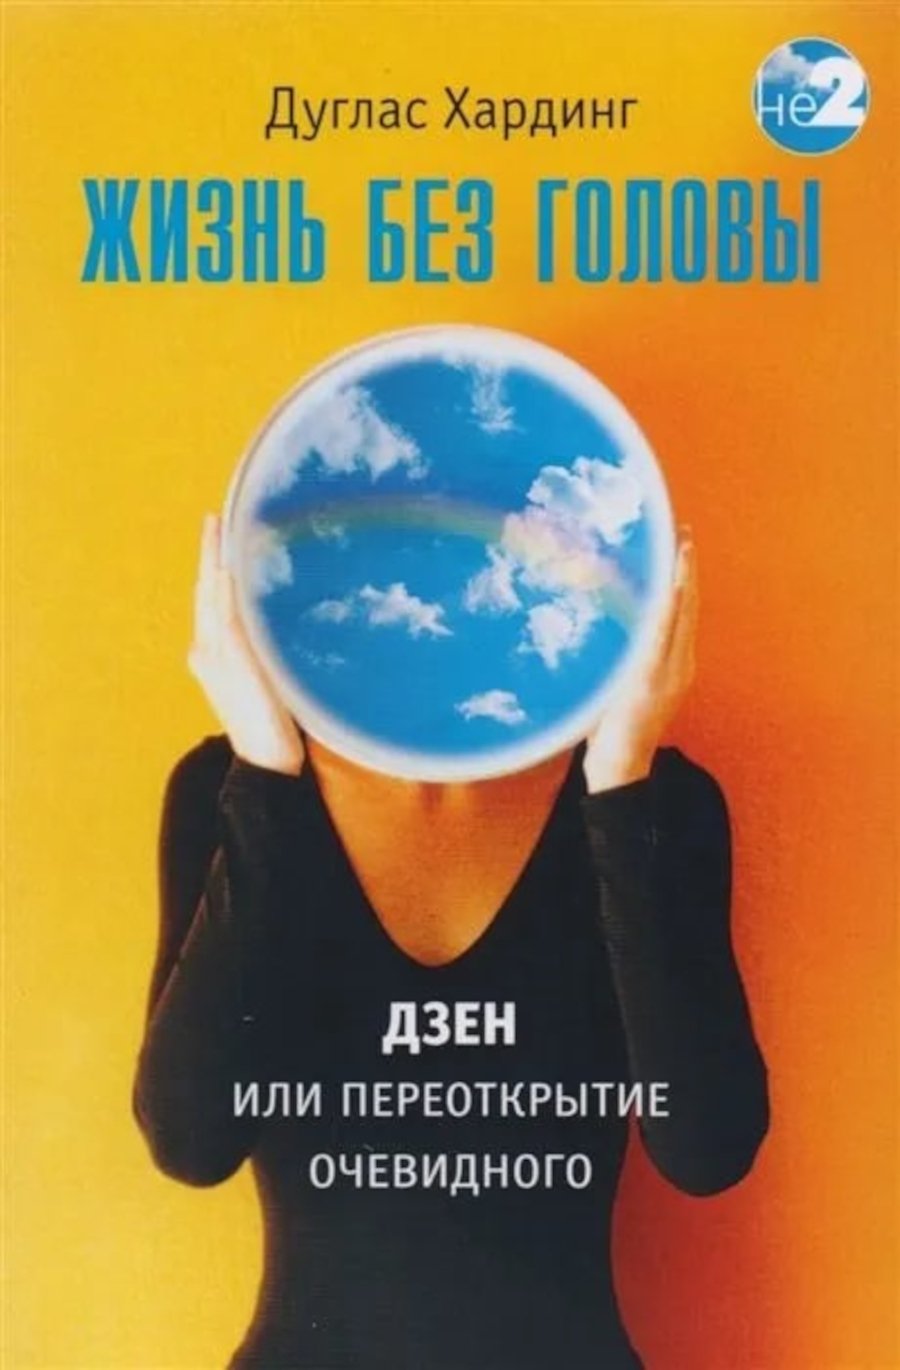 Купить книгу Жизнь без головы Хардинг Д. Е. в интернет-магазине Ариаварта